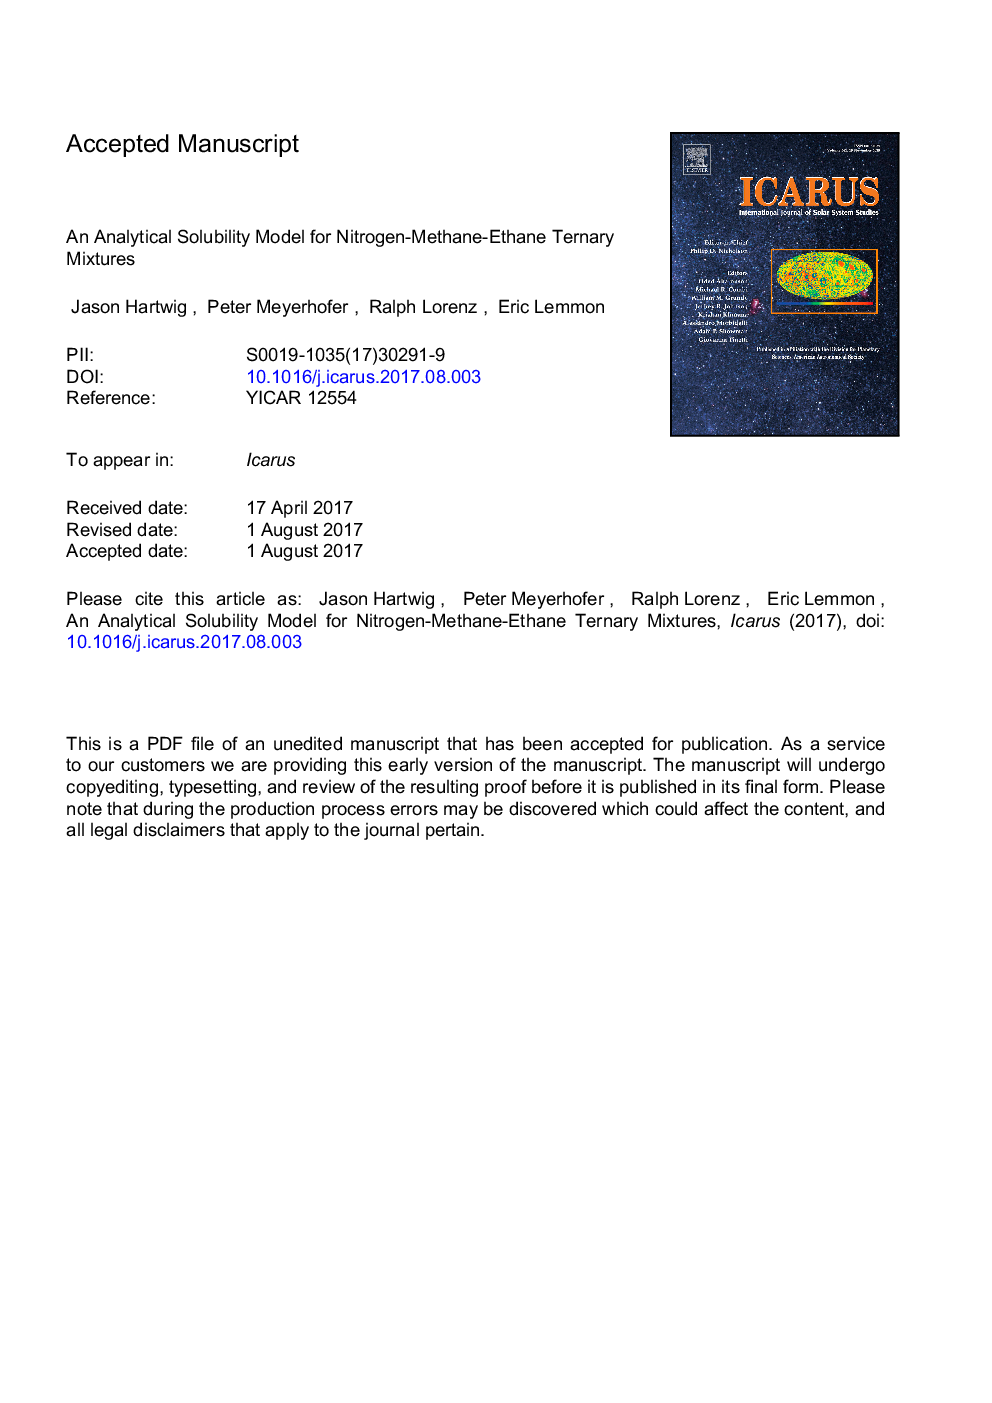 یک مدل حلالیت تحلیلی برای مخلوط ترانسمیتر نیتروژن - متان - اتان